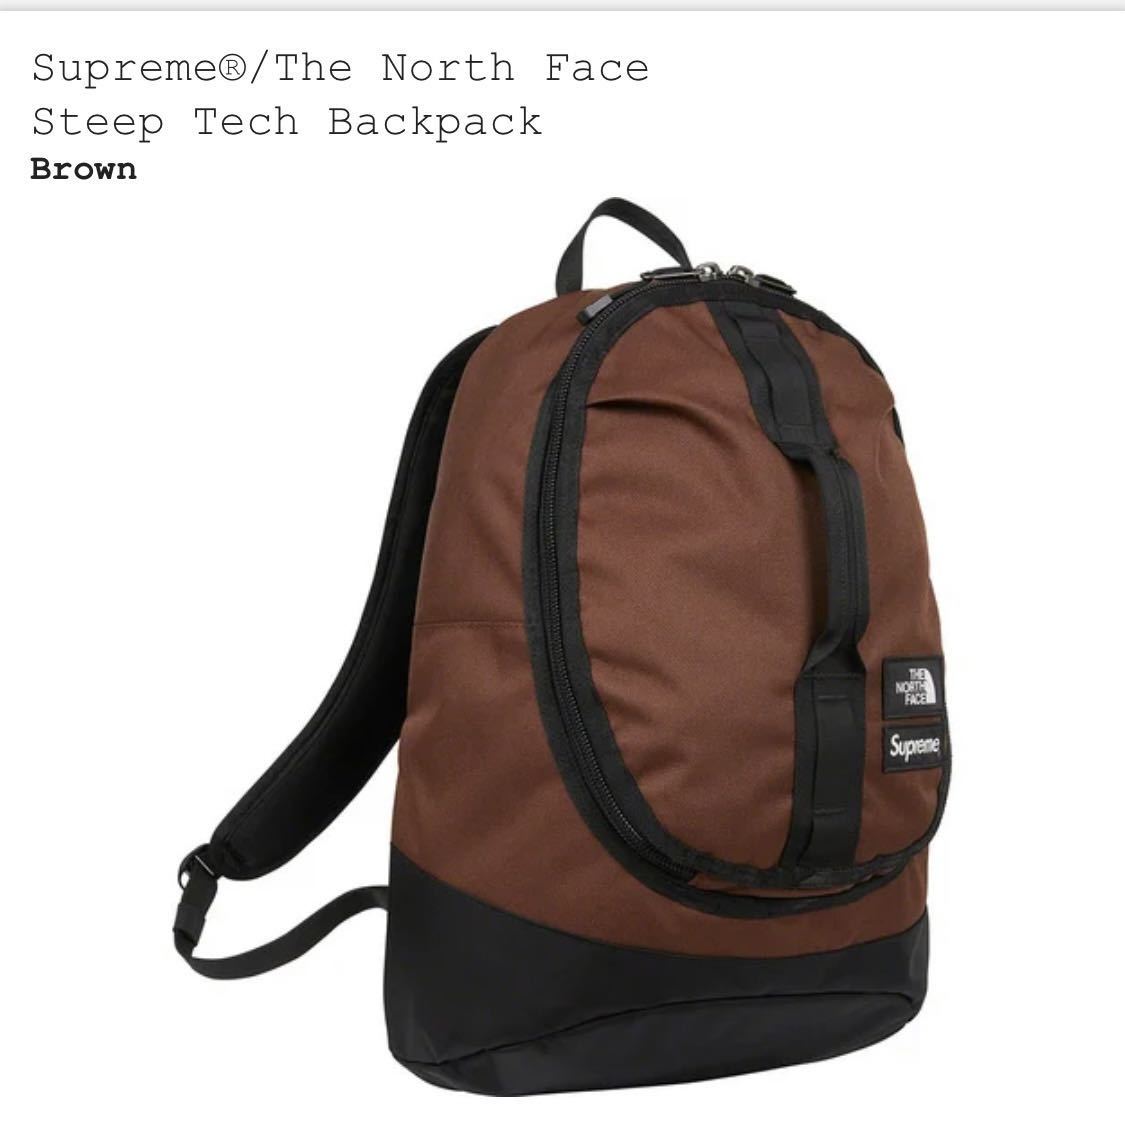 未使用 22fw Supreme The North Face Steep Tech Backpack Brown タグステッカー付き Supreme Online 購入品 シュプリーム ノースフェイス